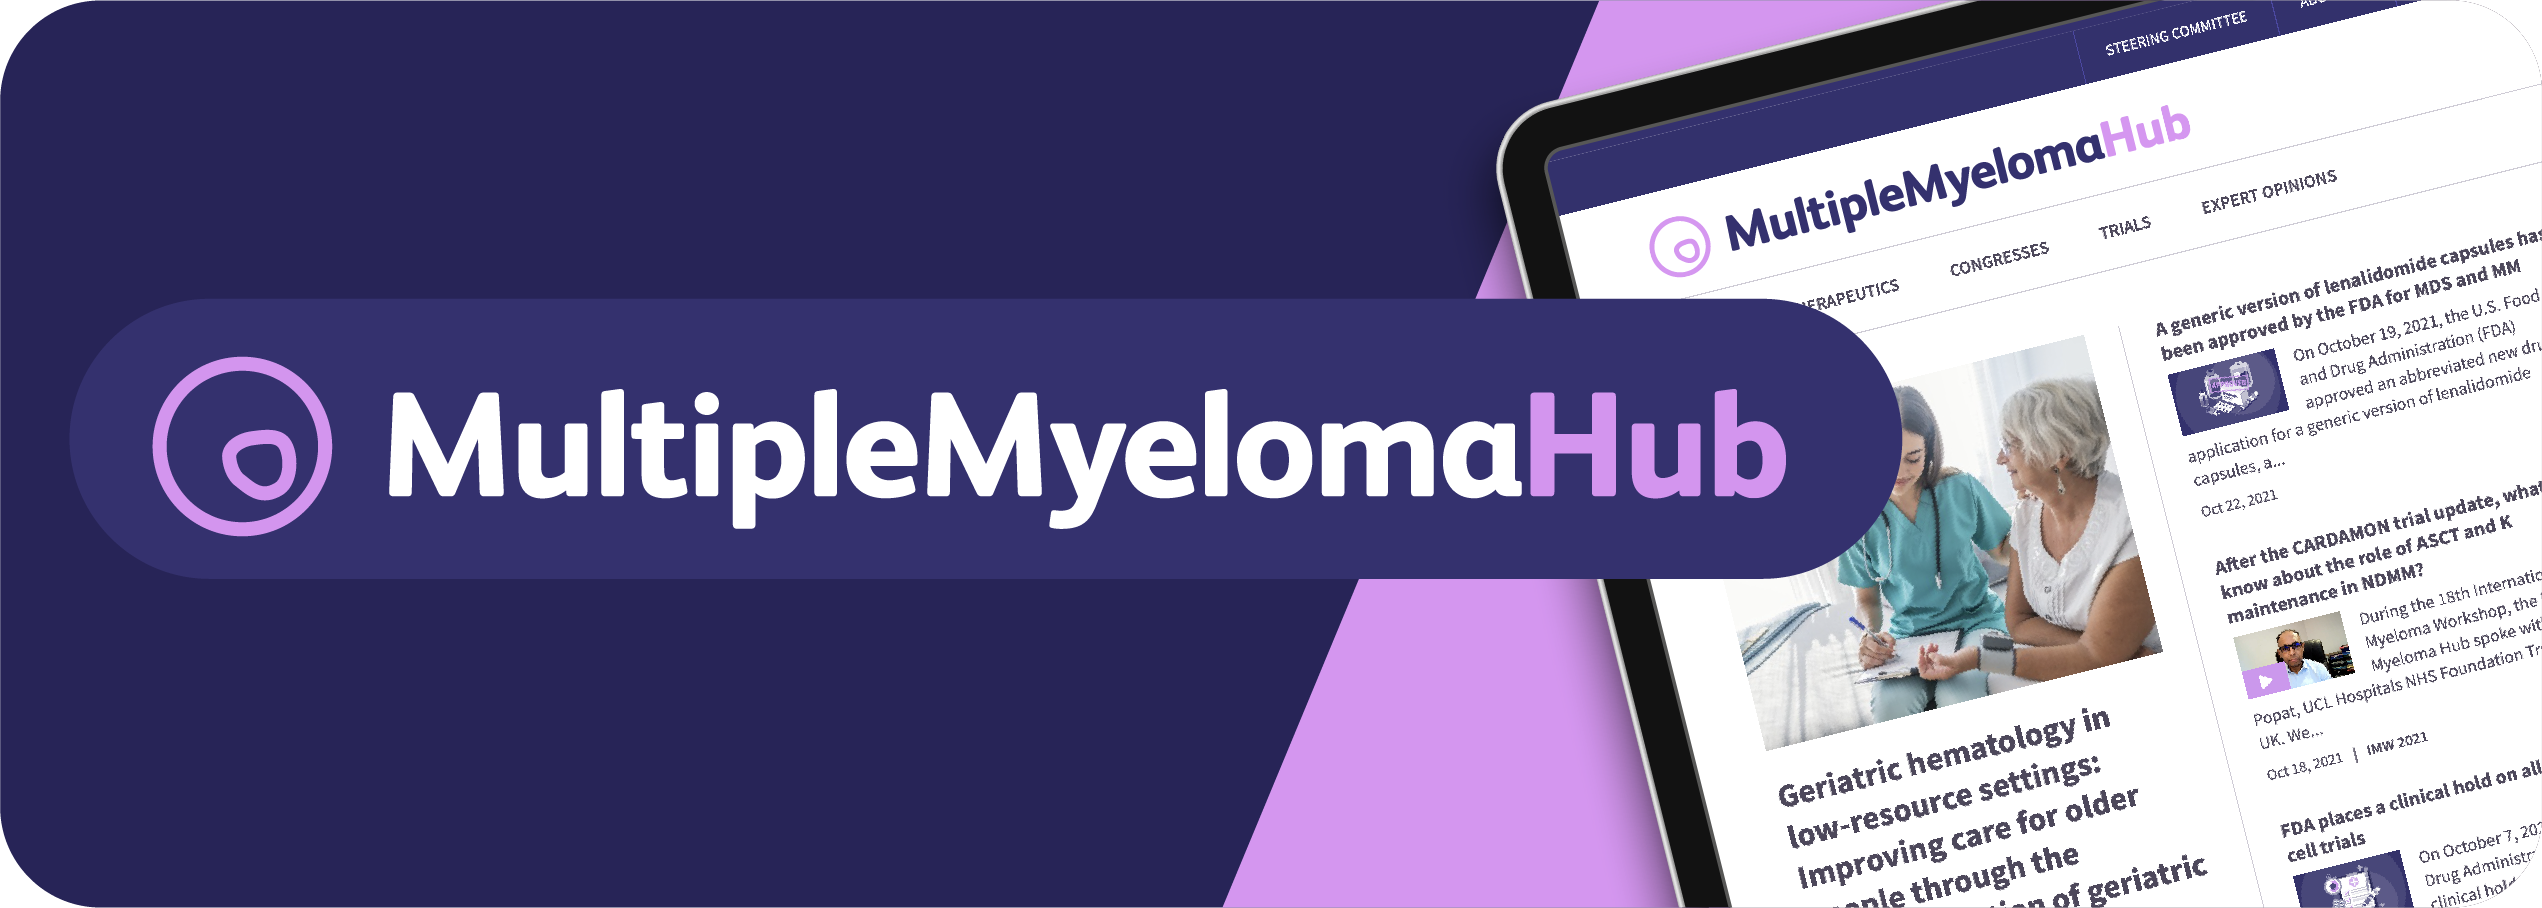 Multiple Myeloma Hub